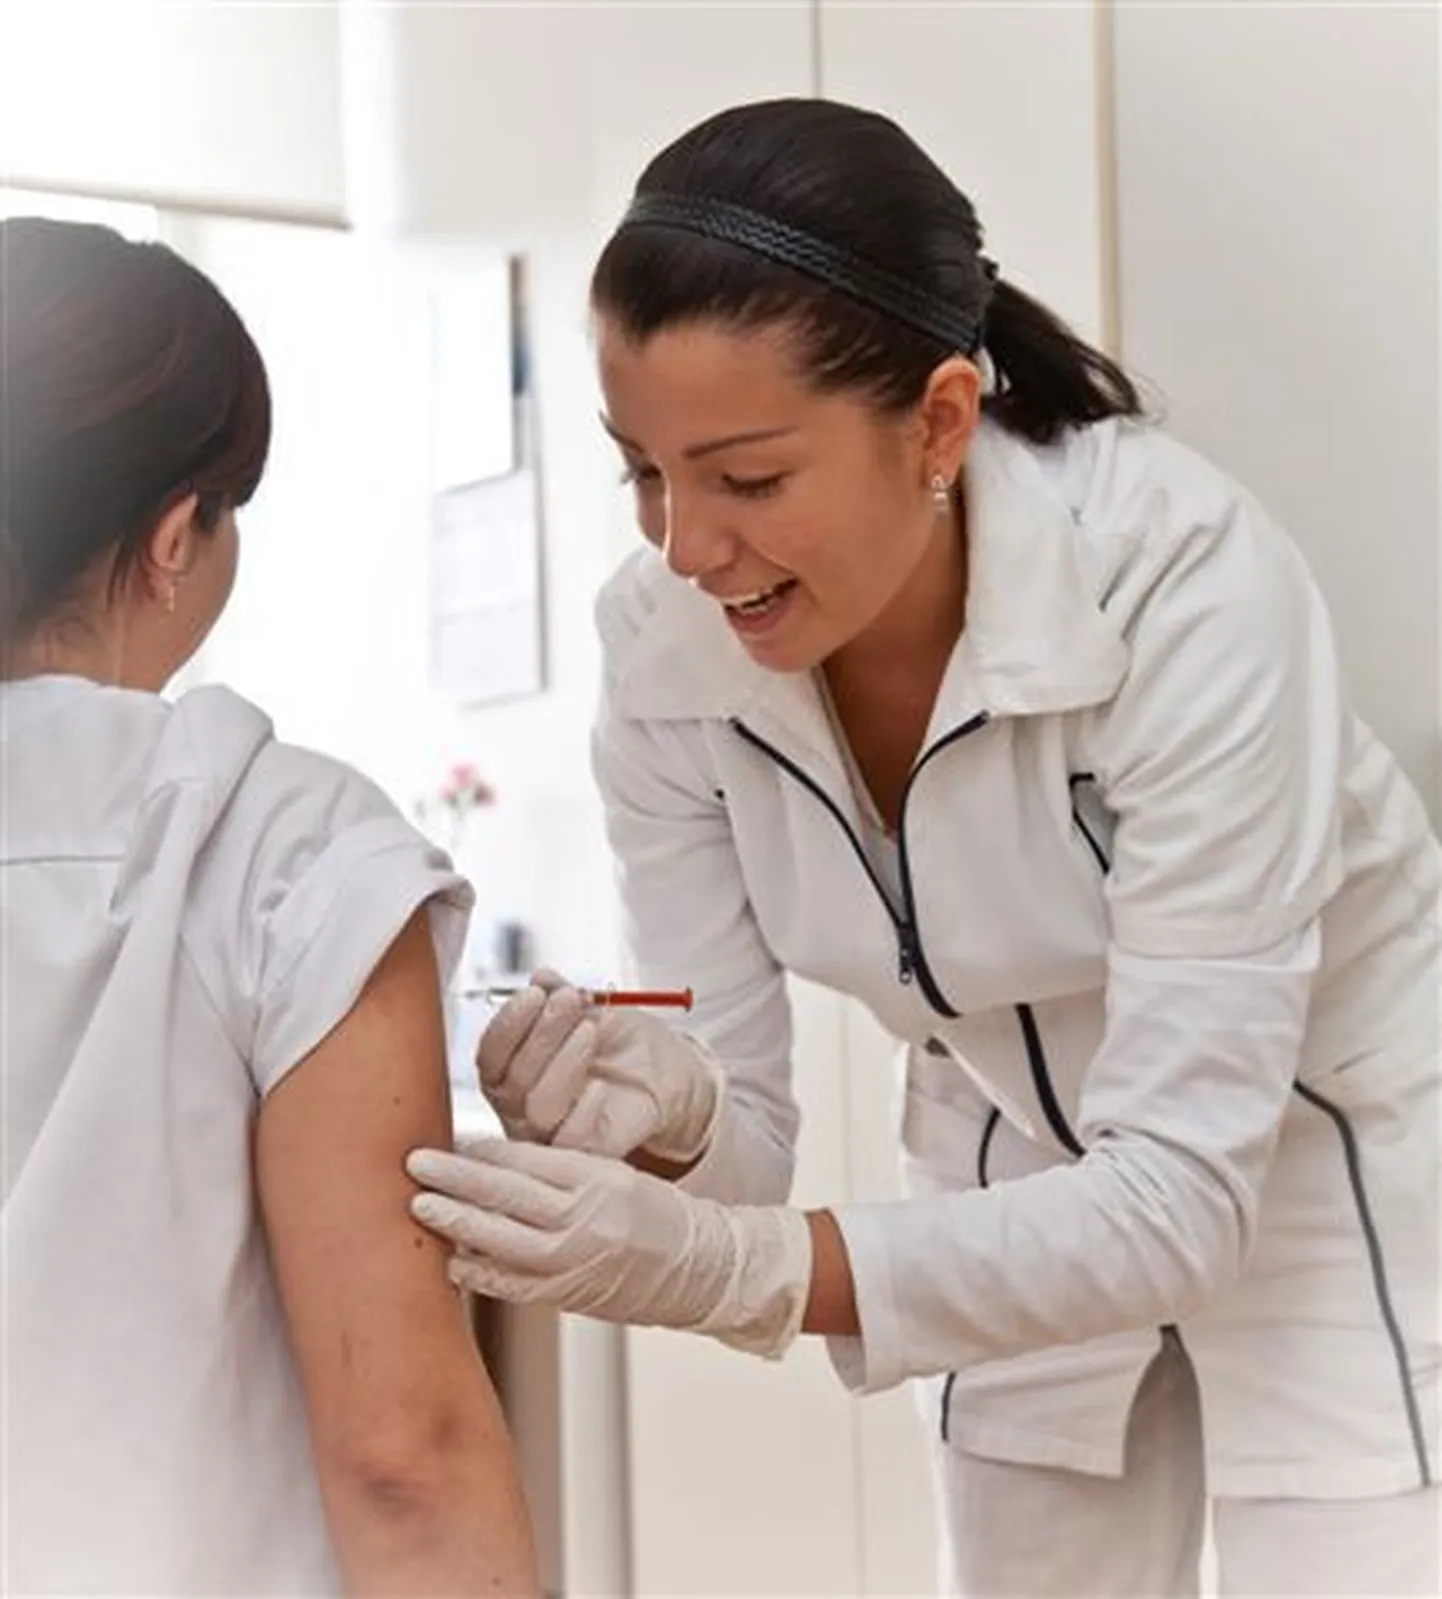 Emakakaelavähi vaktsiini süstitakse lihasesiseselt nagu teisigi vaktsiine.